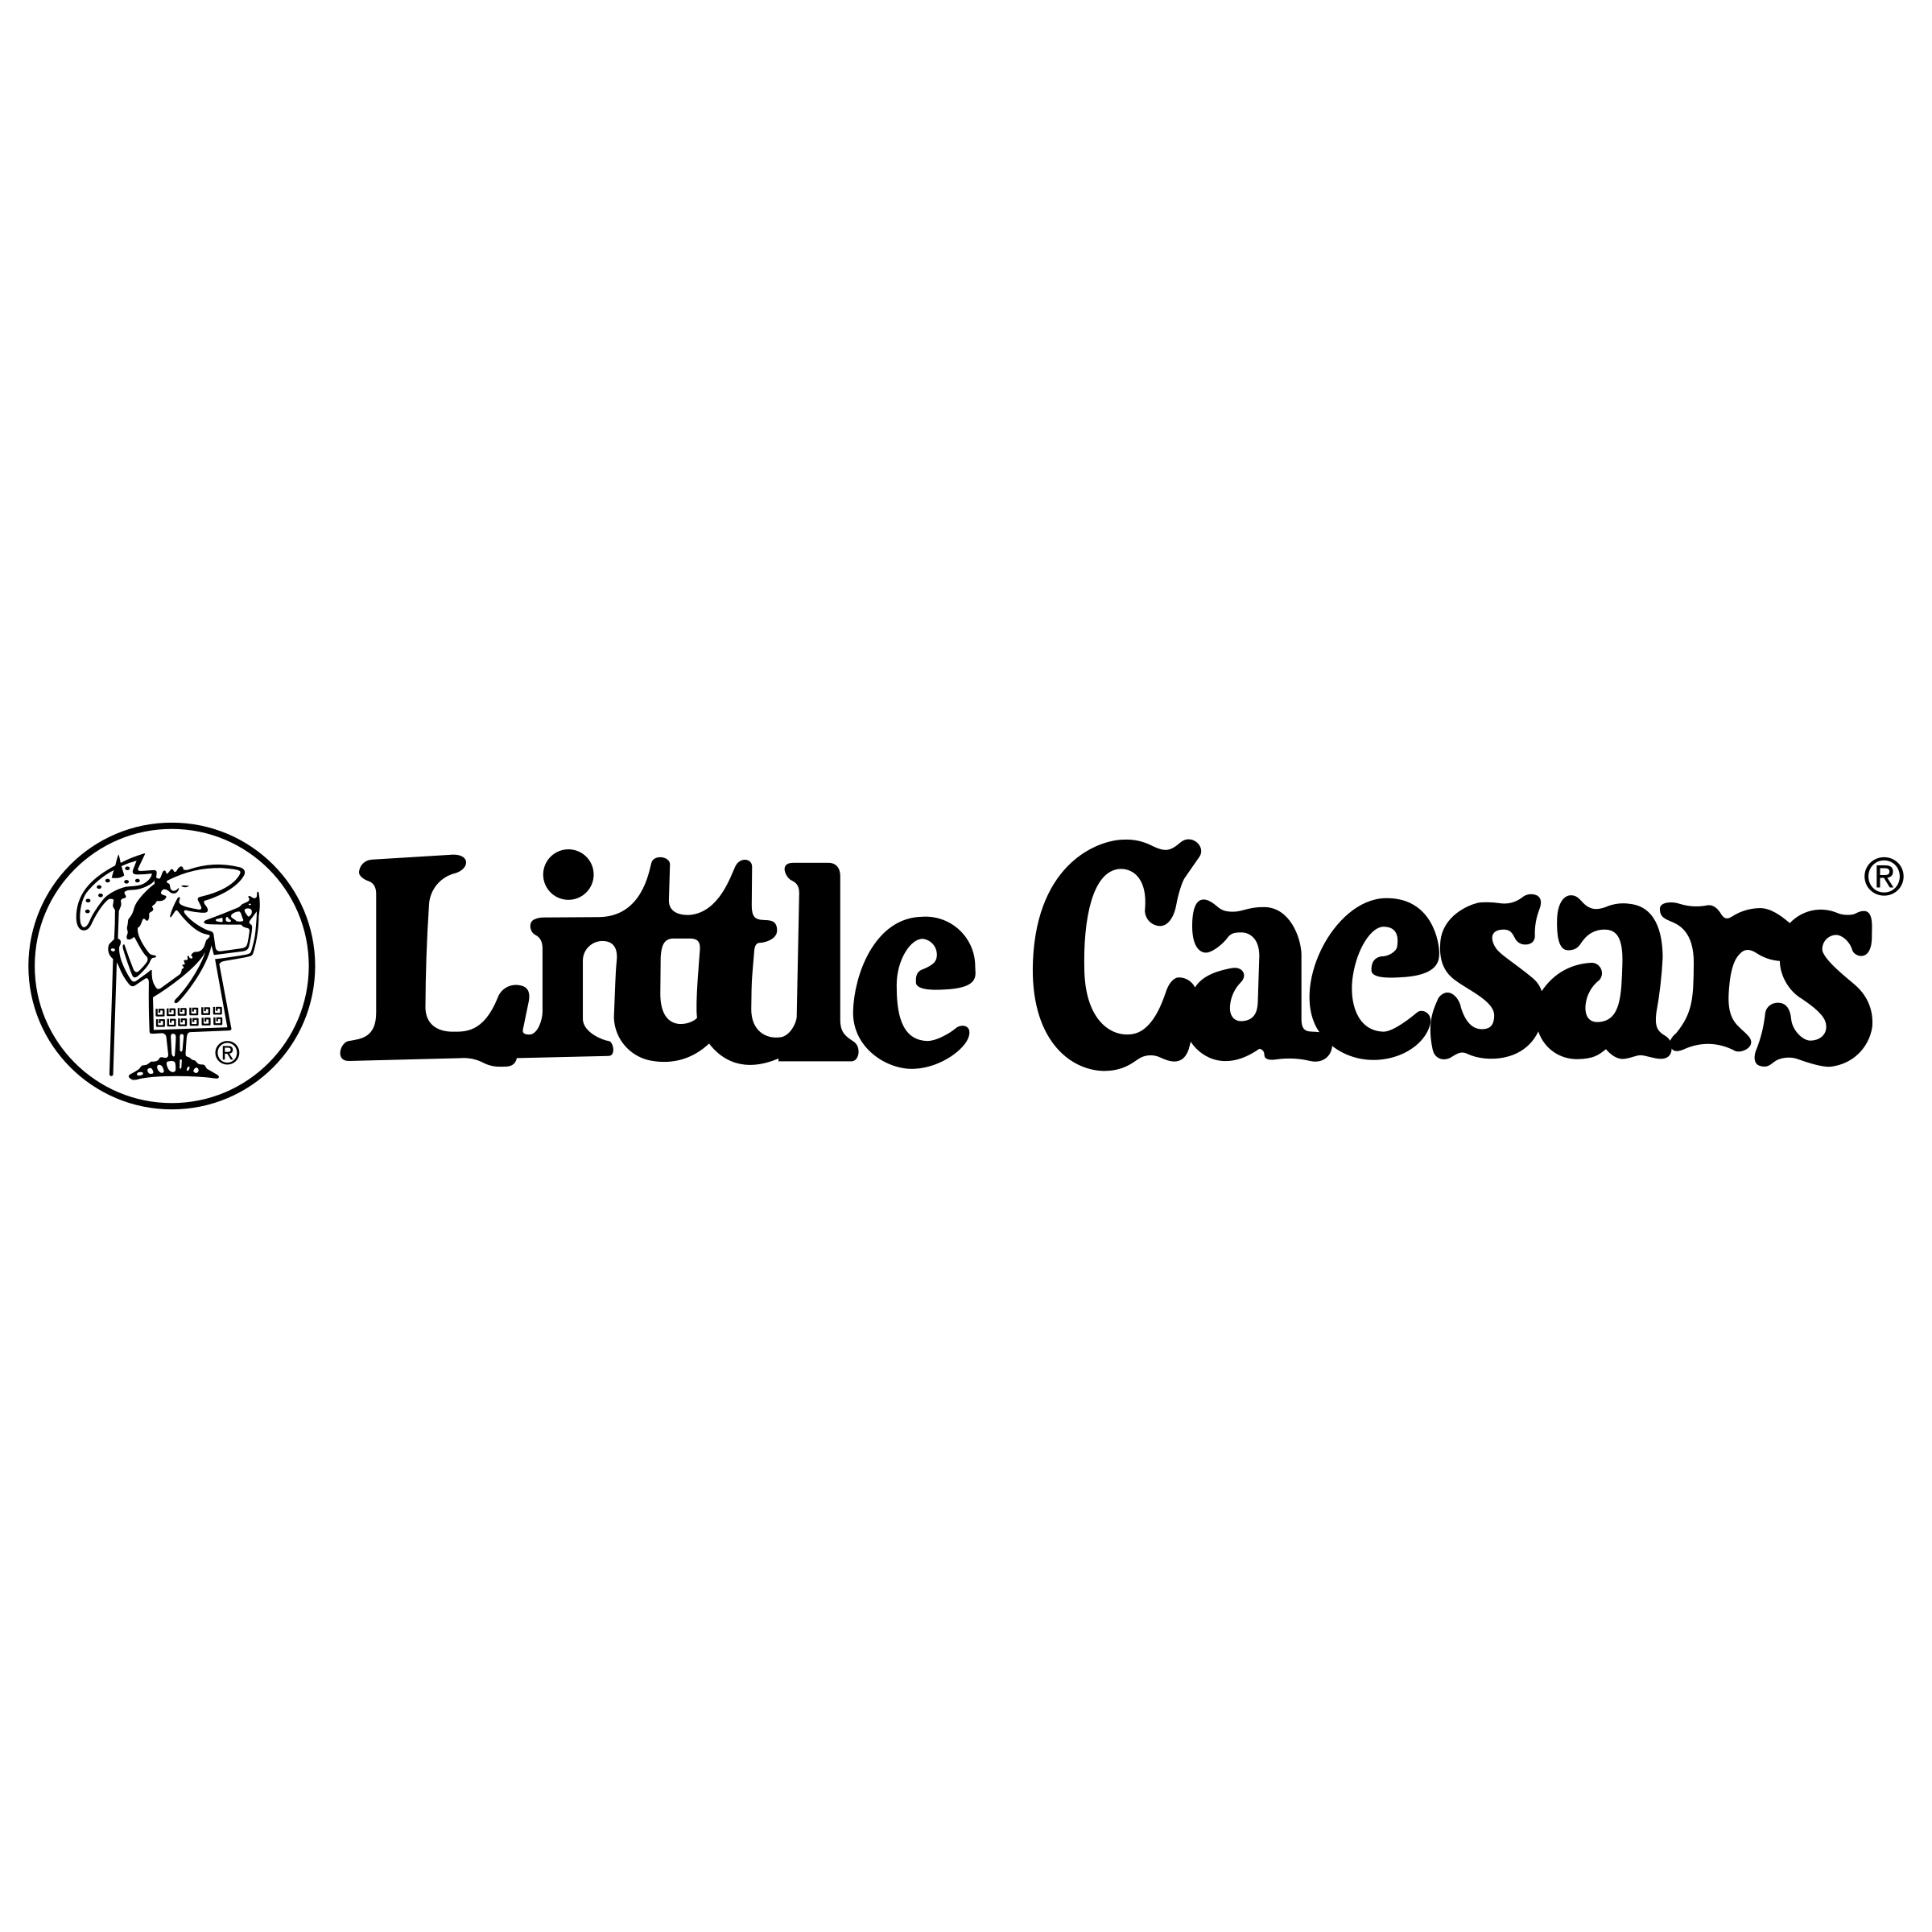 Little Ceasars Logo - Little Caesars Pizza Logo PNG Transparent & SVG Vector